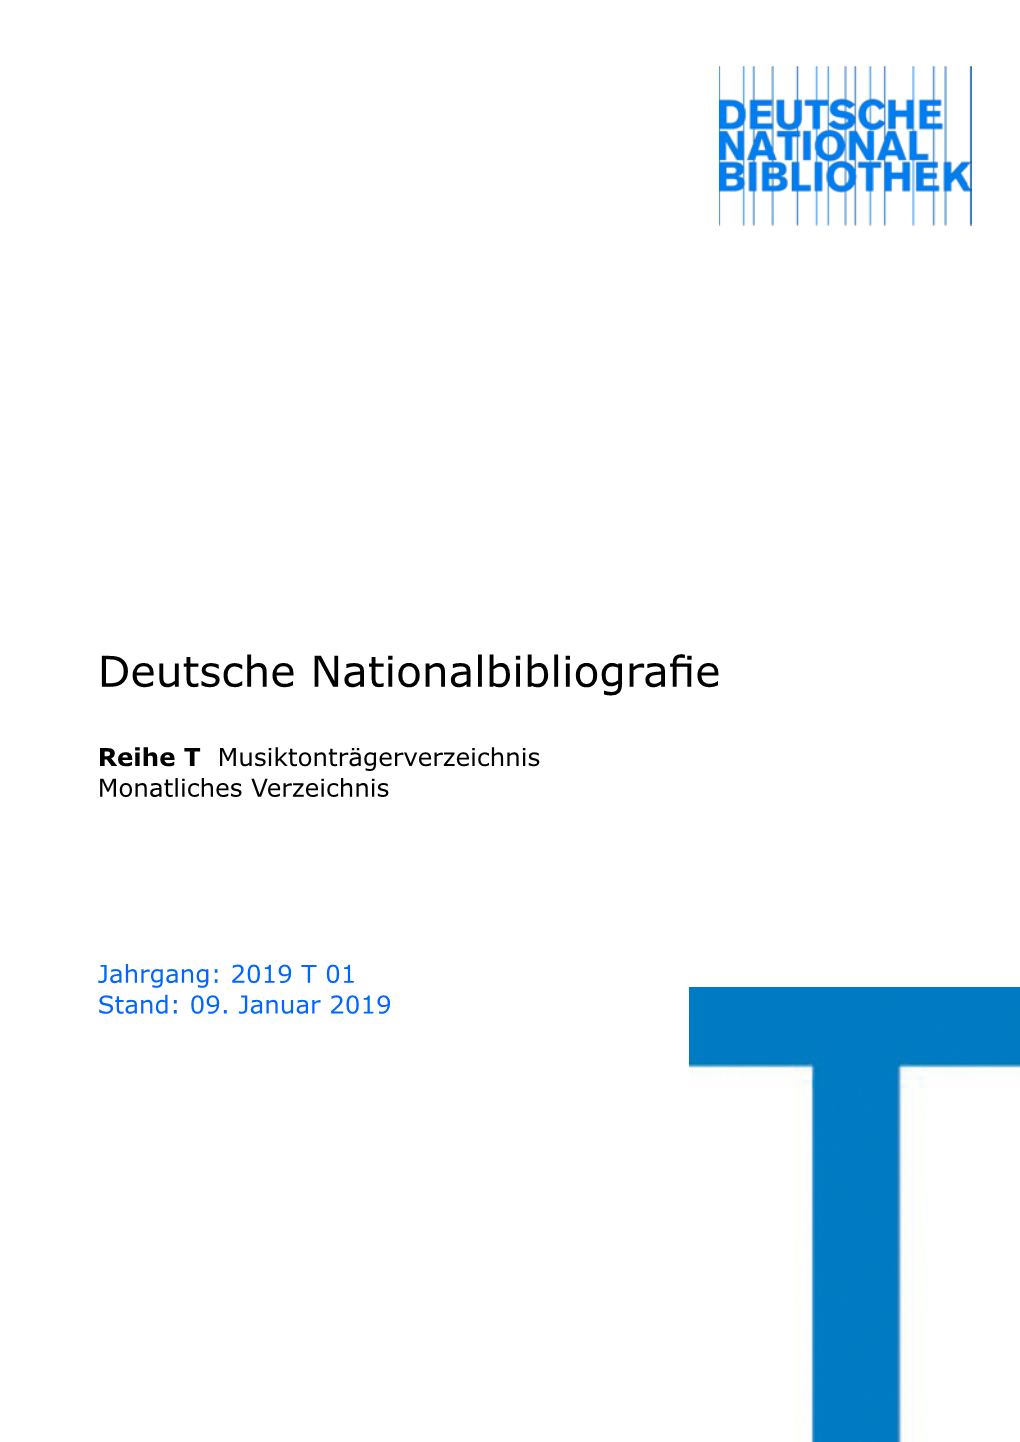 Deutsche Nationalbibliografie 2019 T 01